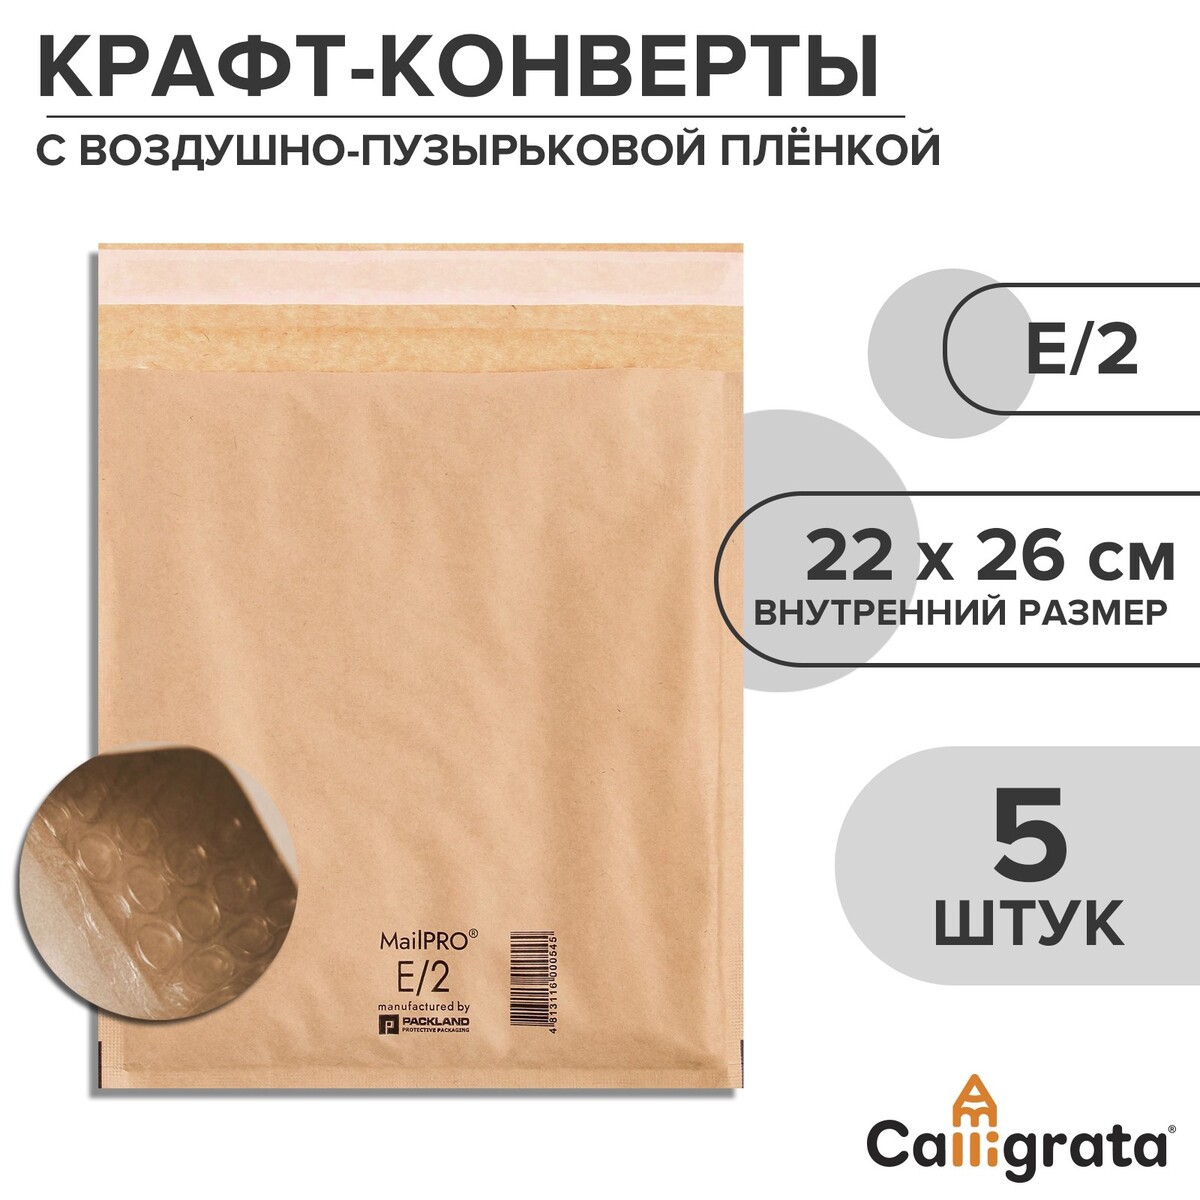 Набор крафт-конвертов с воздушно-пузырьковой пленкой mailpro e/2, 22 х 26 см, 5 штук, kraft